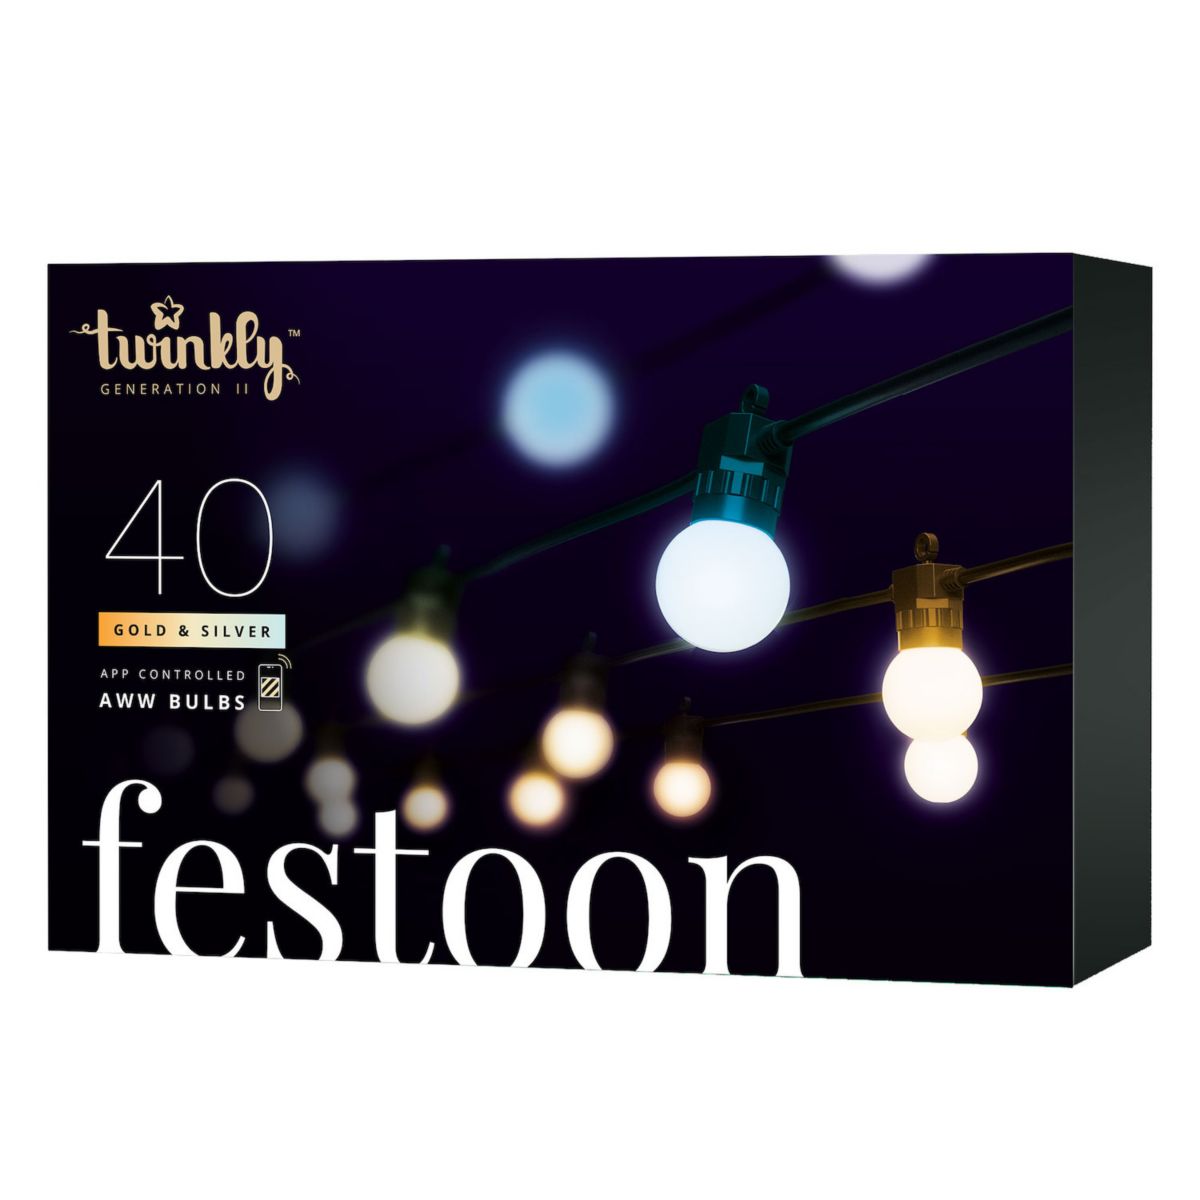 Светодиодные лампы Twinkly Festoon Smart 40 AWW, шнур 66 футов, черный кабель, поколение II Twinkly